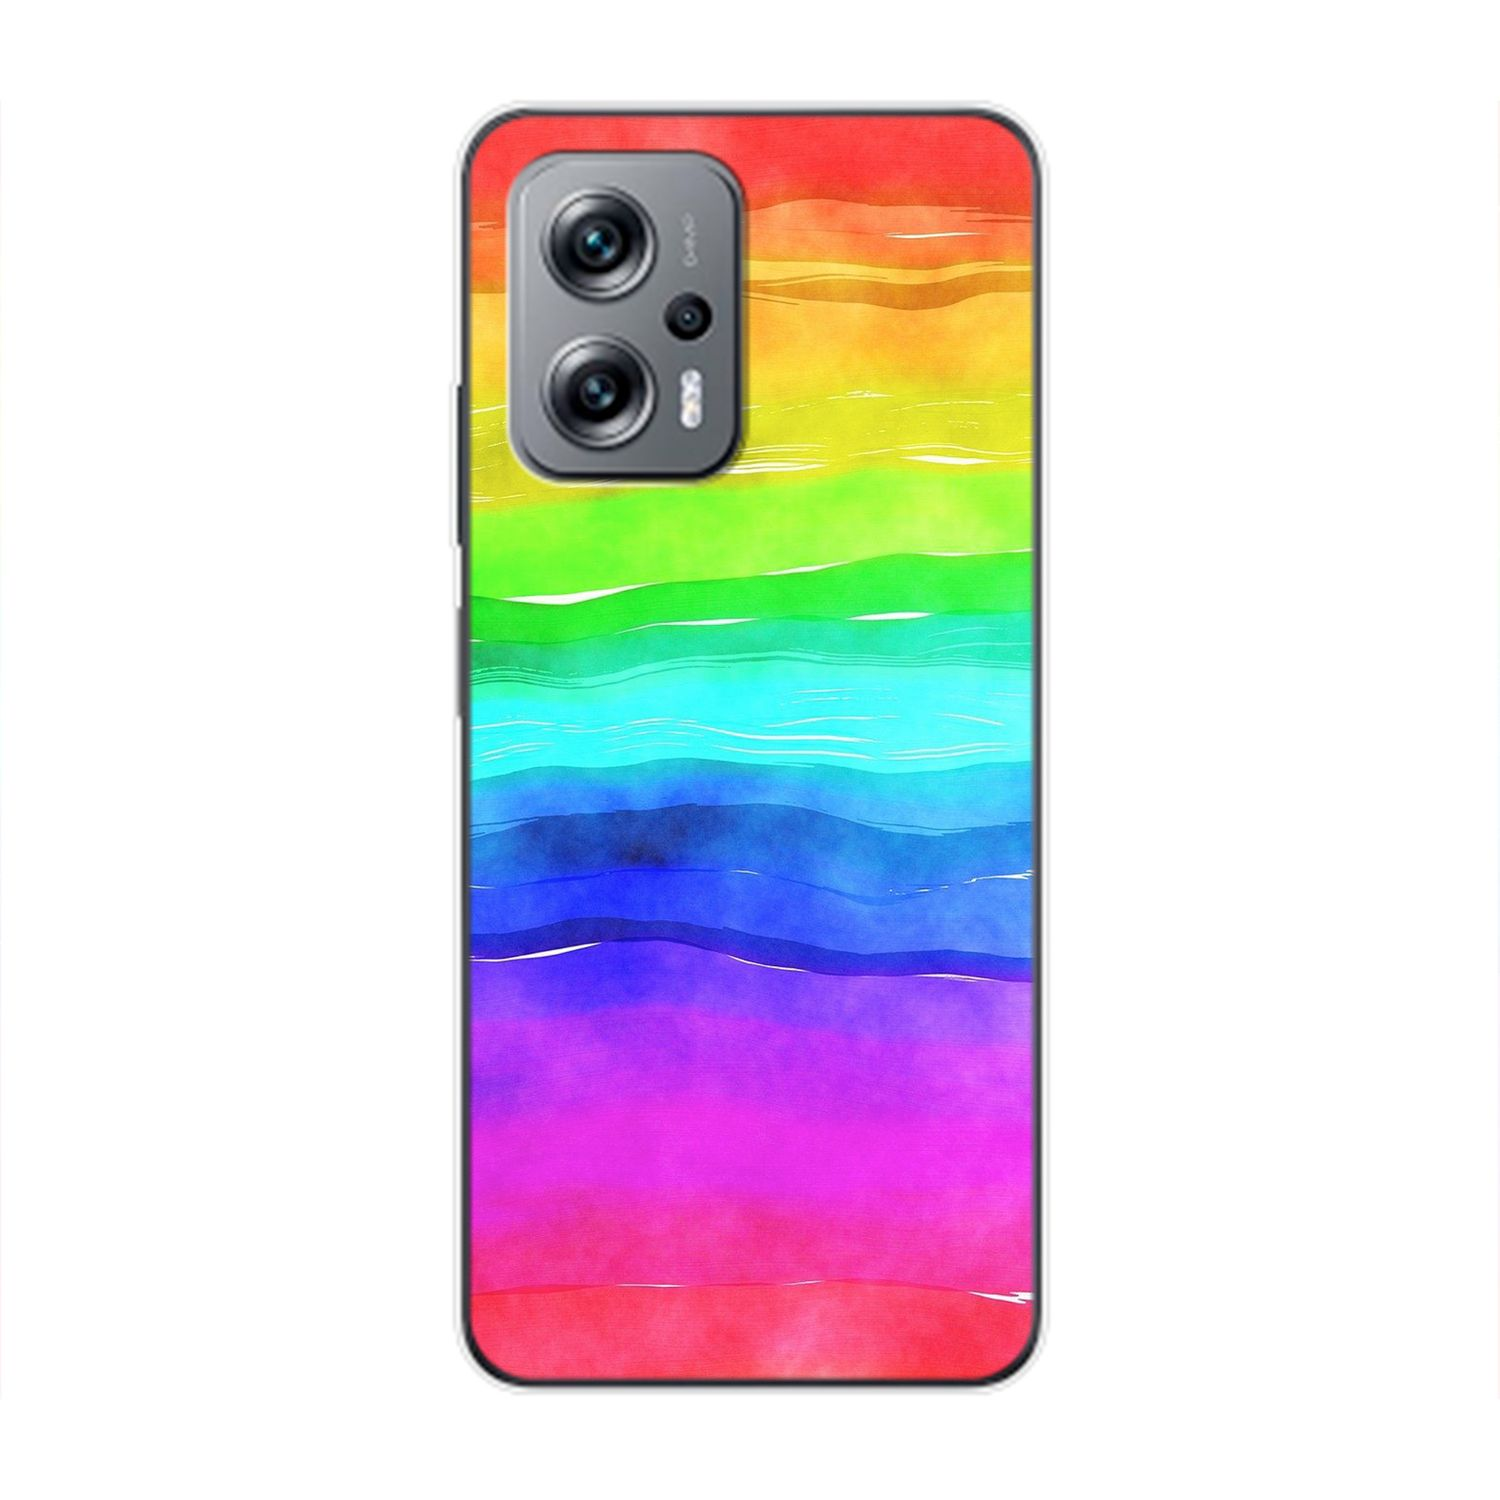 KÖNIG DESIGN Regenbogen Xiaomi, K50i, Redmi Backcover, Case